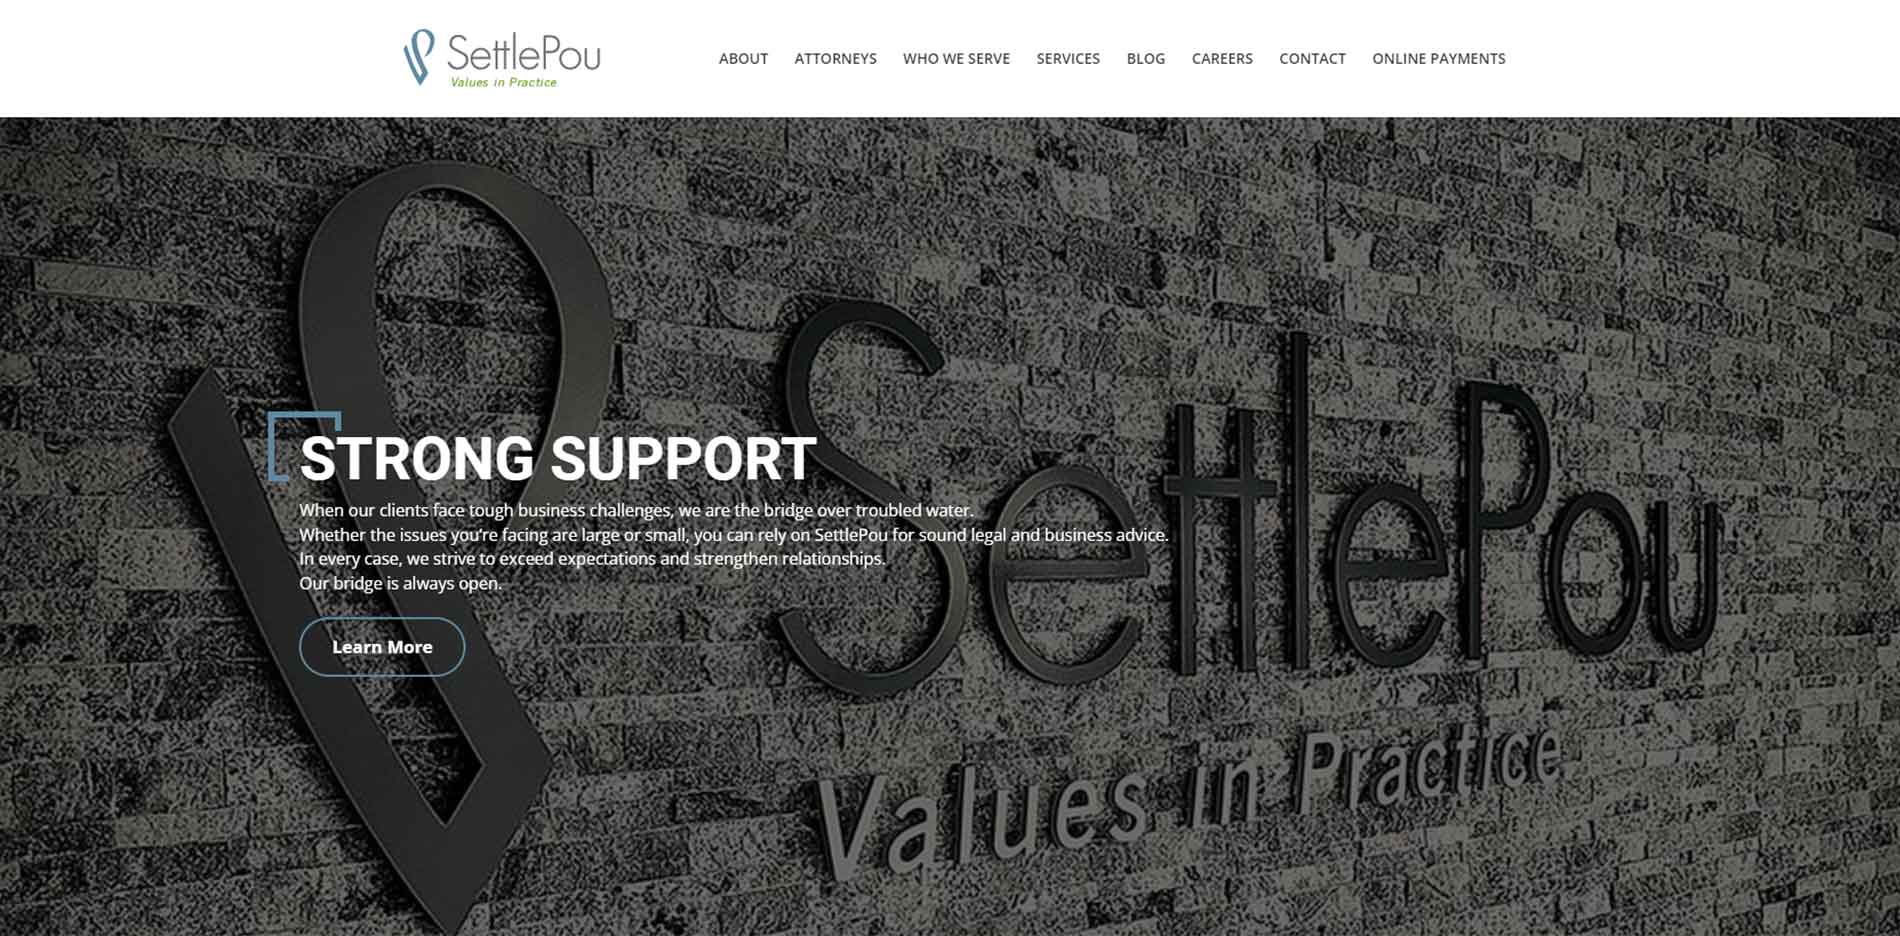 SettlePou Website